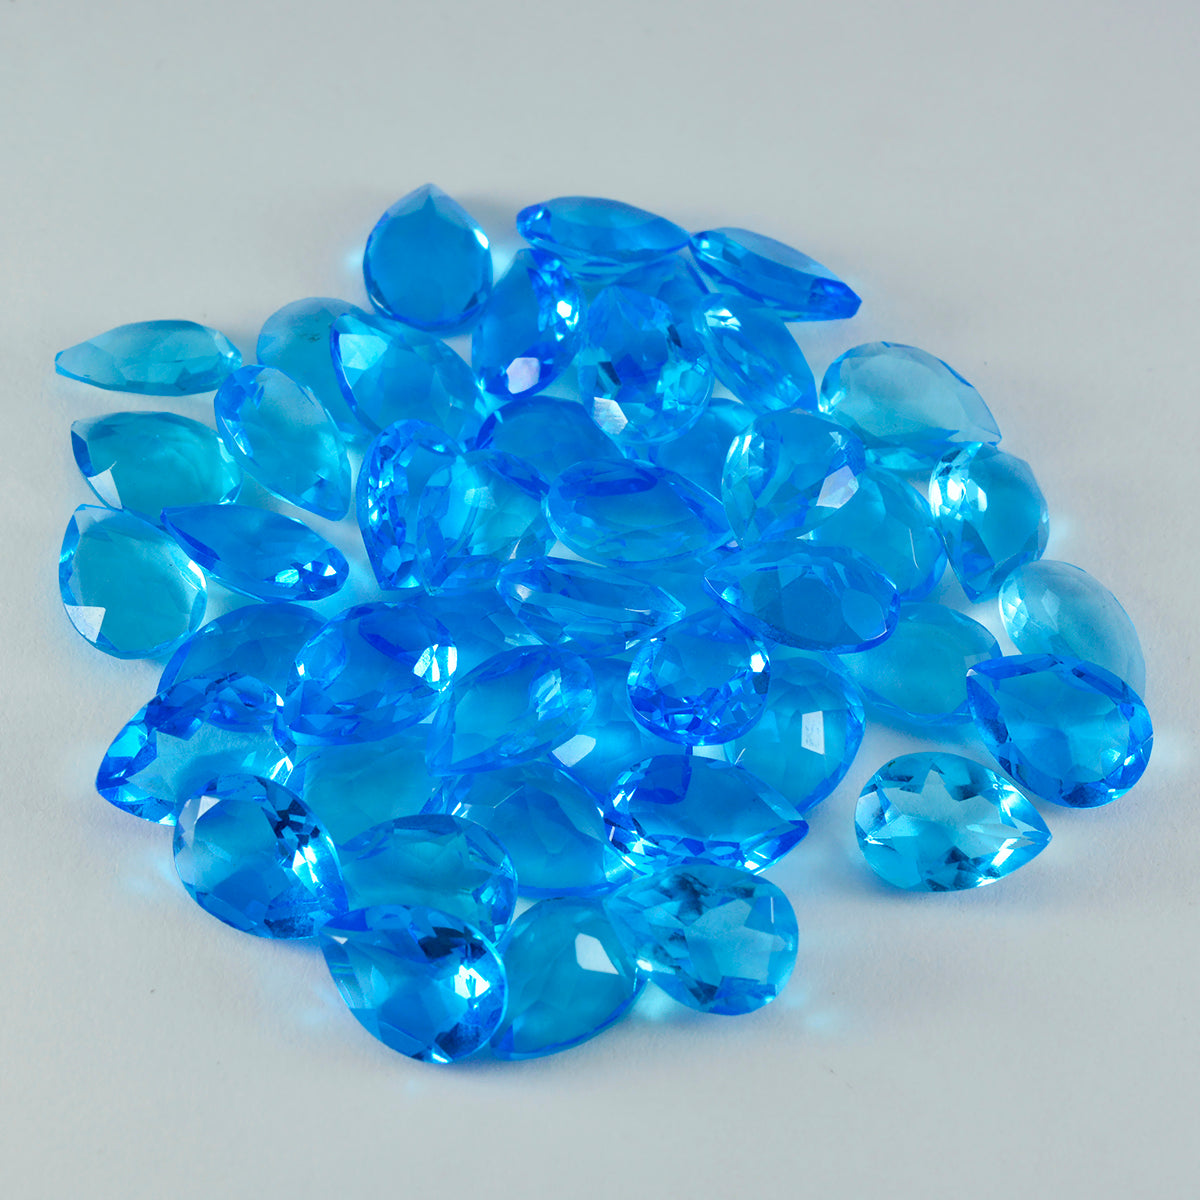 riyogems 1 шт. синий топаз cz ограненный 7x10 мм грушевидной формы красивые качественные свободные драгоценные камни